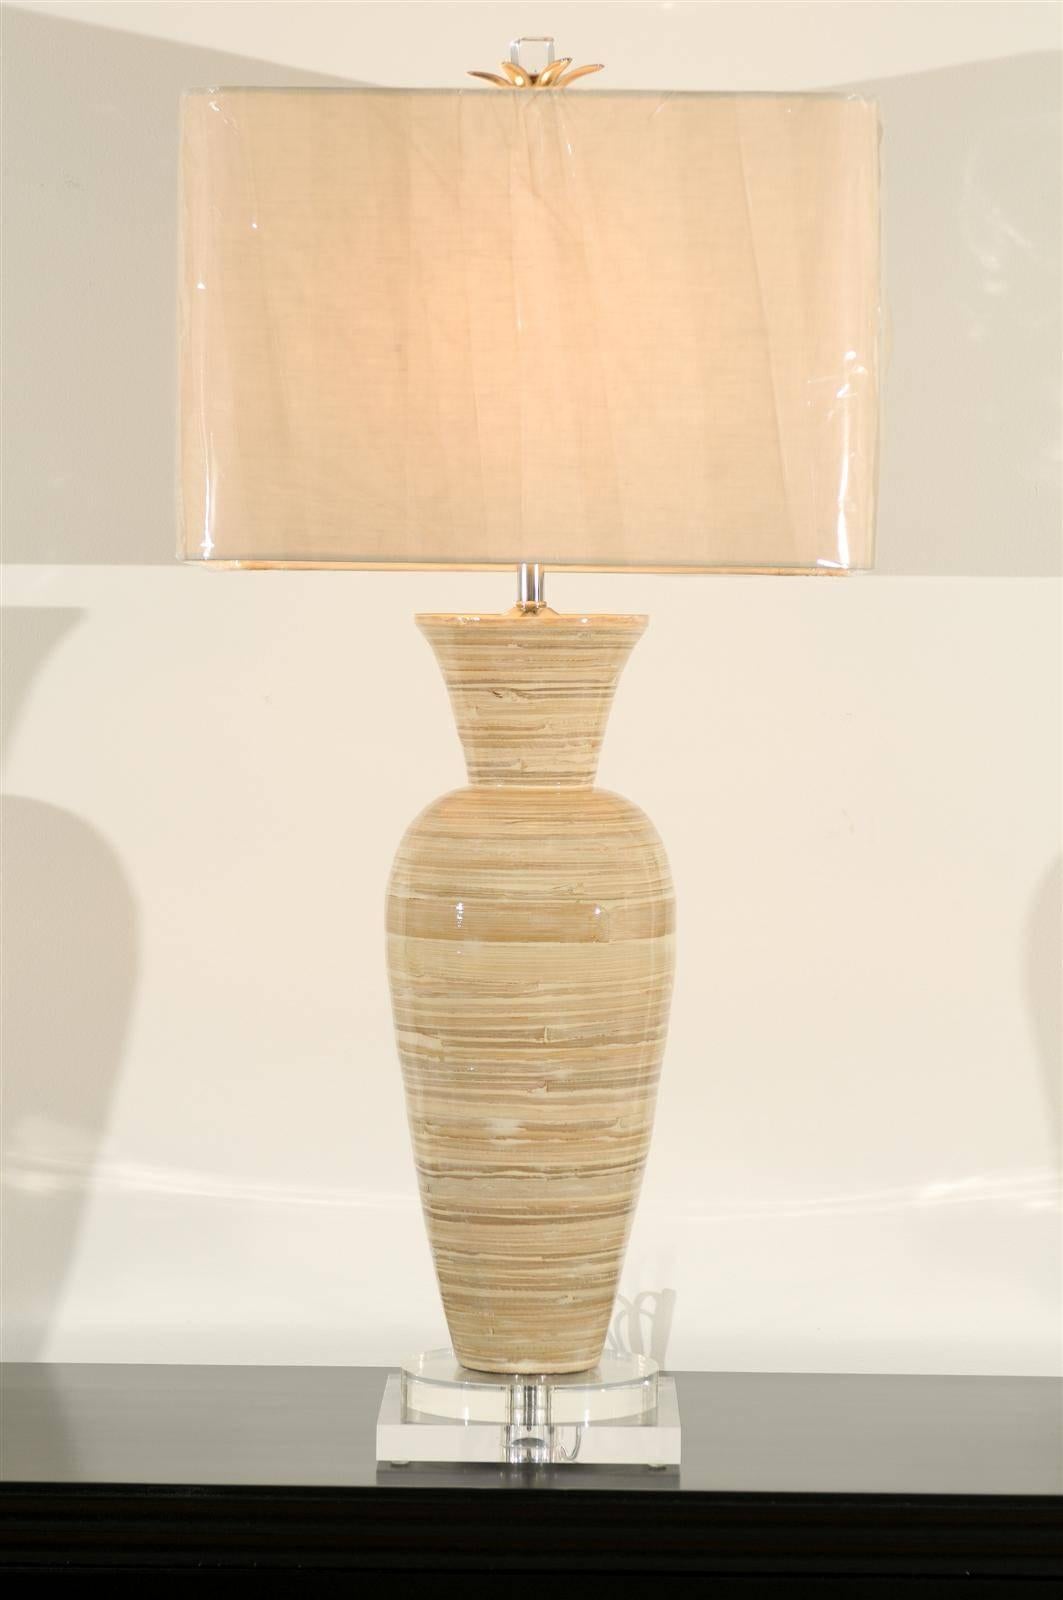 Ein exquisites Paar Bambusvasen als maßgefertigte Lampen. Schöne Form, Größe, Textur und Farbpalette. Außergewöhnliches Gewicht und Handwerkskunst. Atemberaubender Schmuck! Ausgezeichneter restaurierter Zustand. Verkabelung mit klarem Kabel; neue